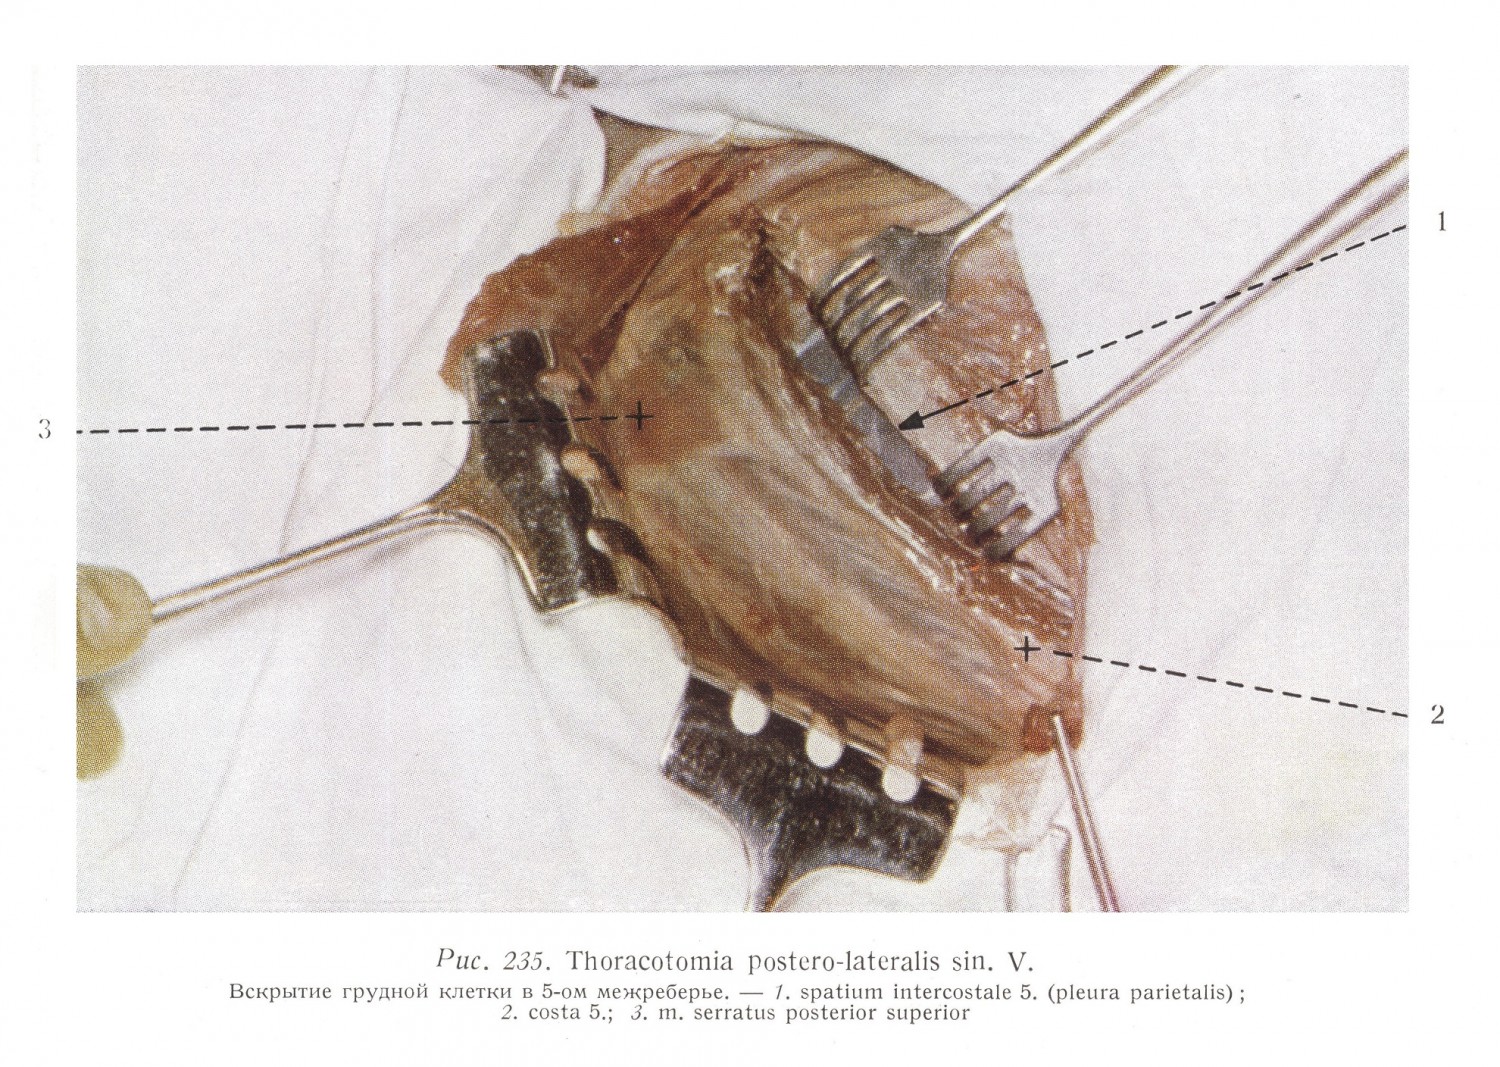 Thoracotomia postero-lateralis sin.